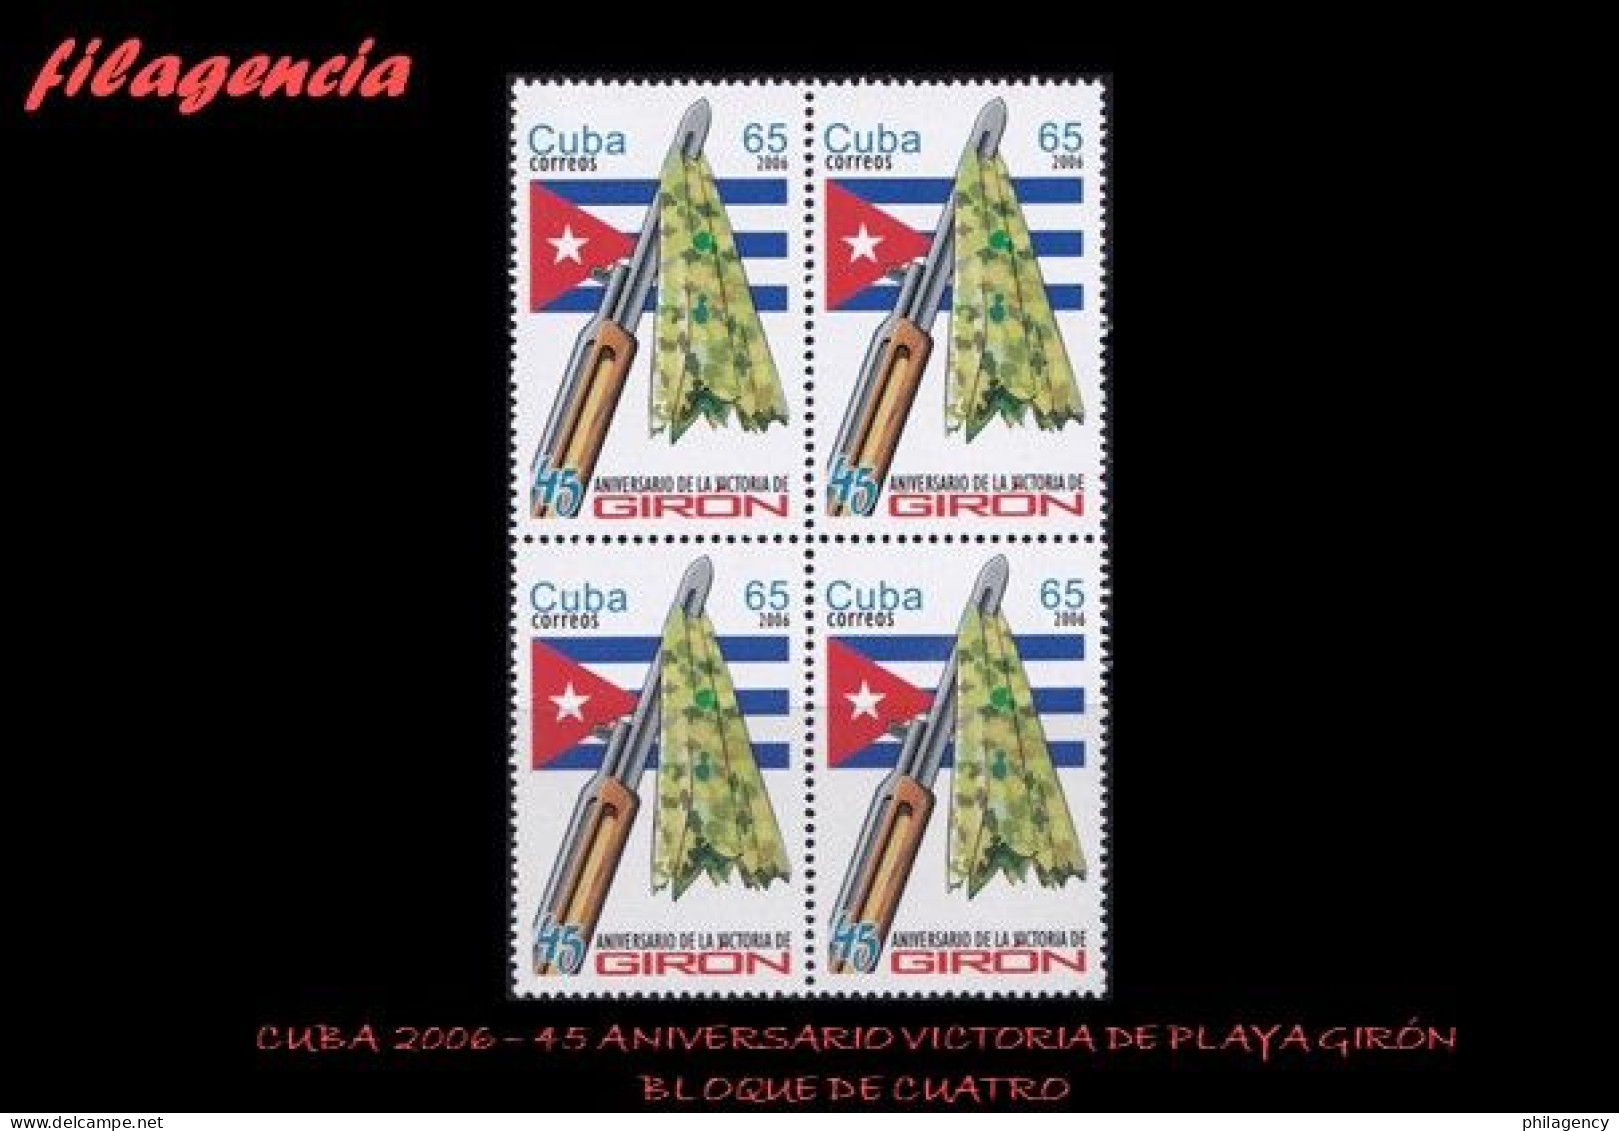 CUBA. BLOQUES DE CUATRO. 2006-09 45 ANIVERSARIO DE LA VICTORIA DE PLAYA GIRÓN - Neufs